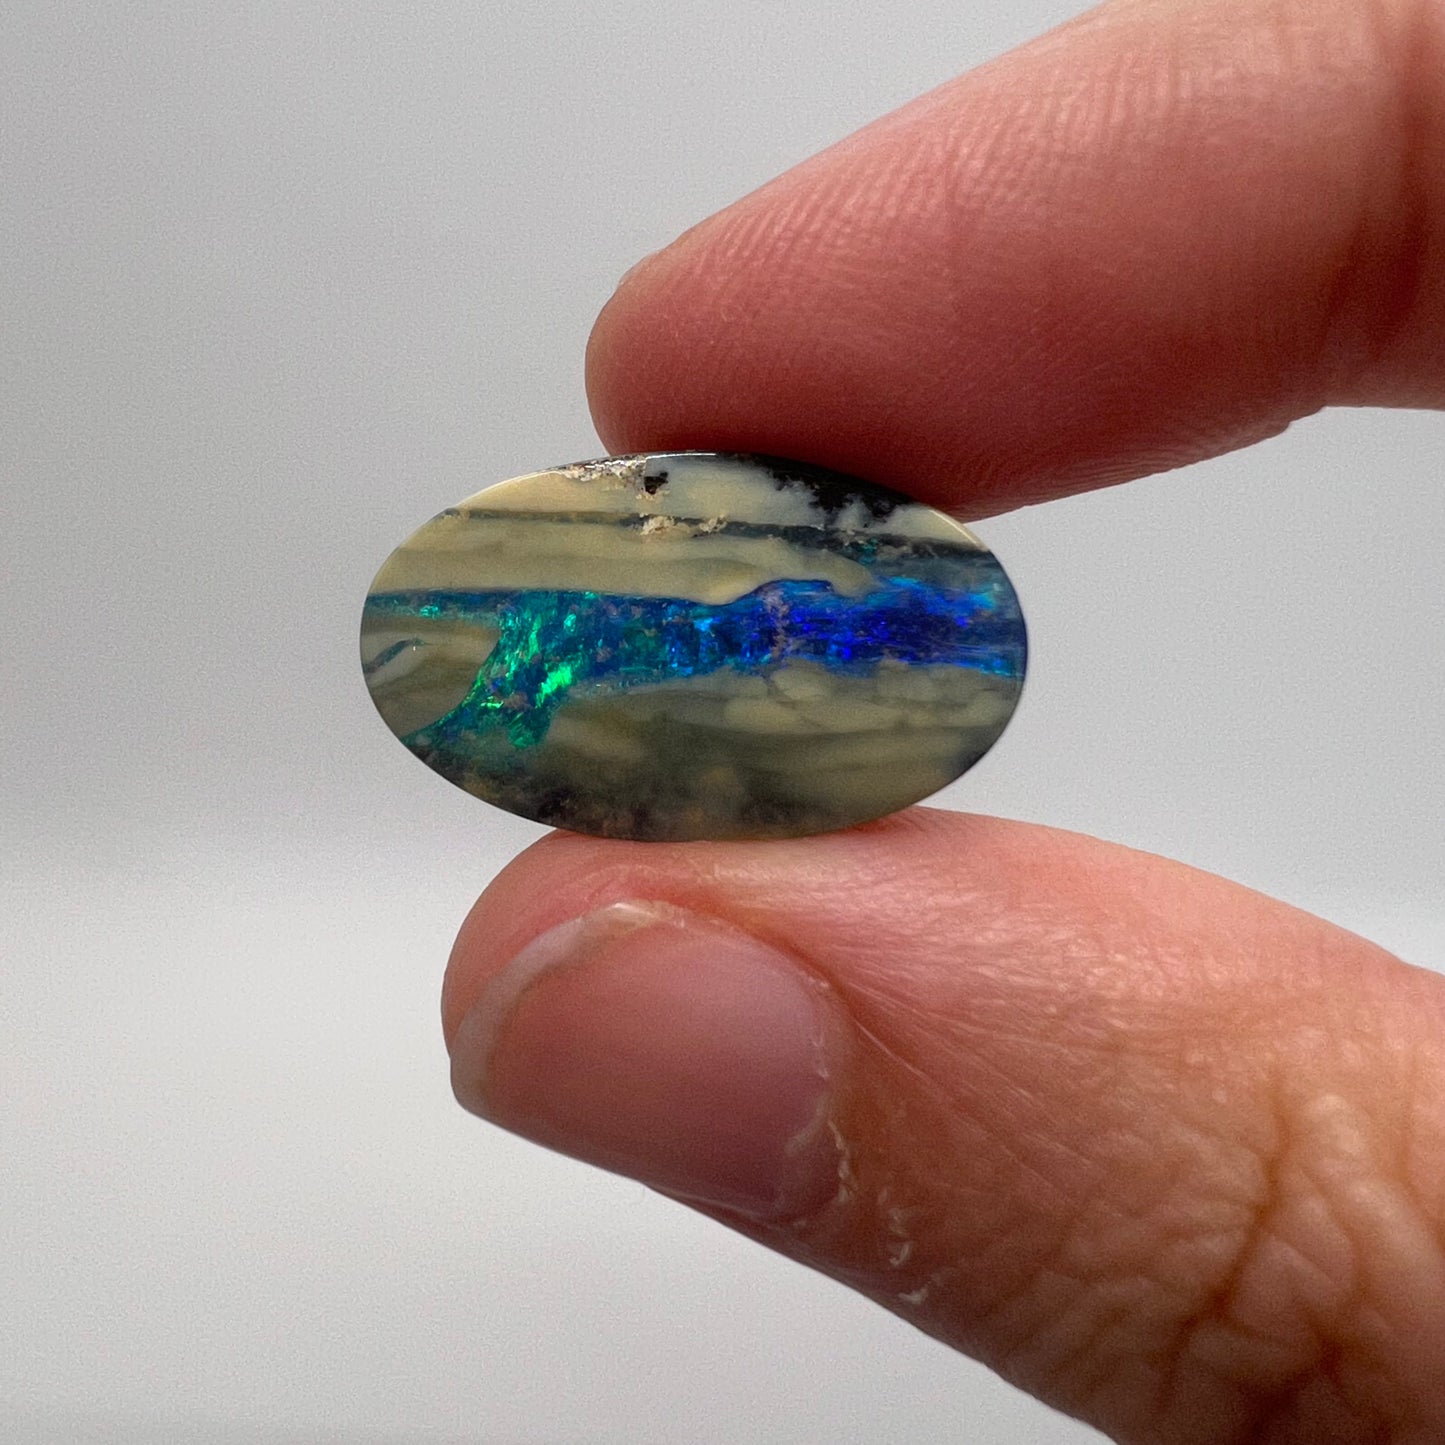 8.78 Ct oval boulder opal